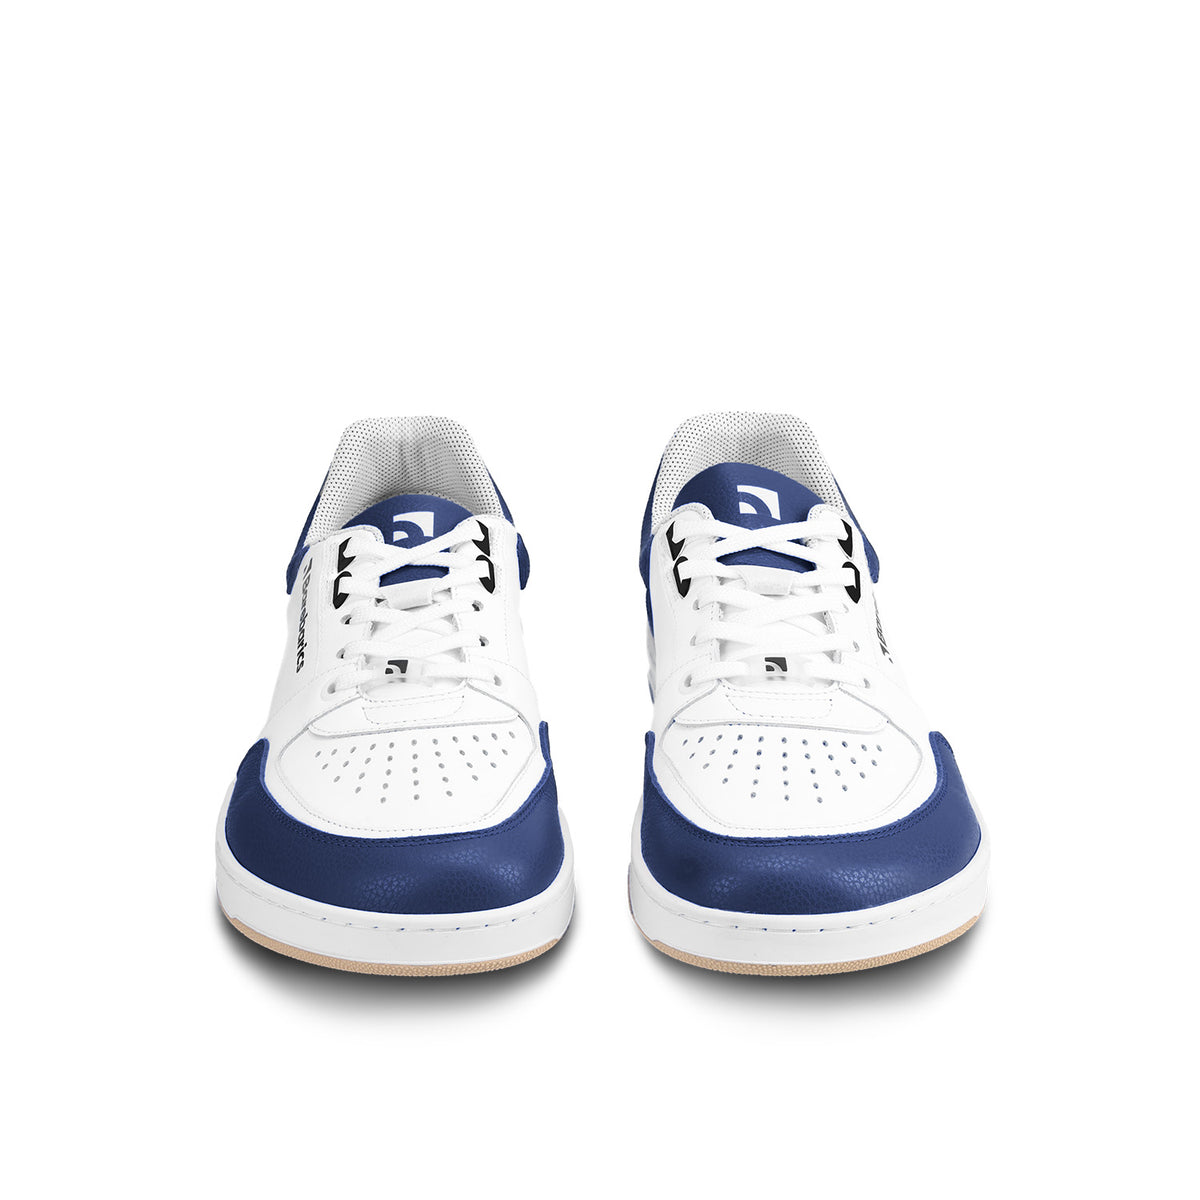 Barefoot Sneakers Barebarics Wave - White & Dark Blue 5  - OzBarefoot